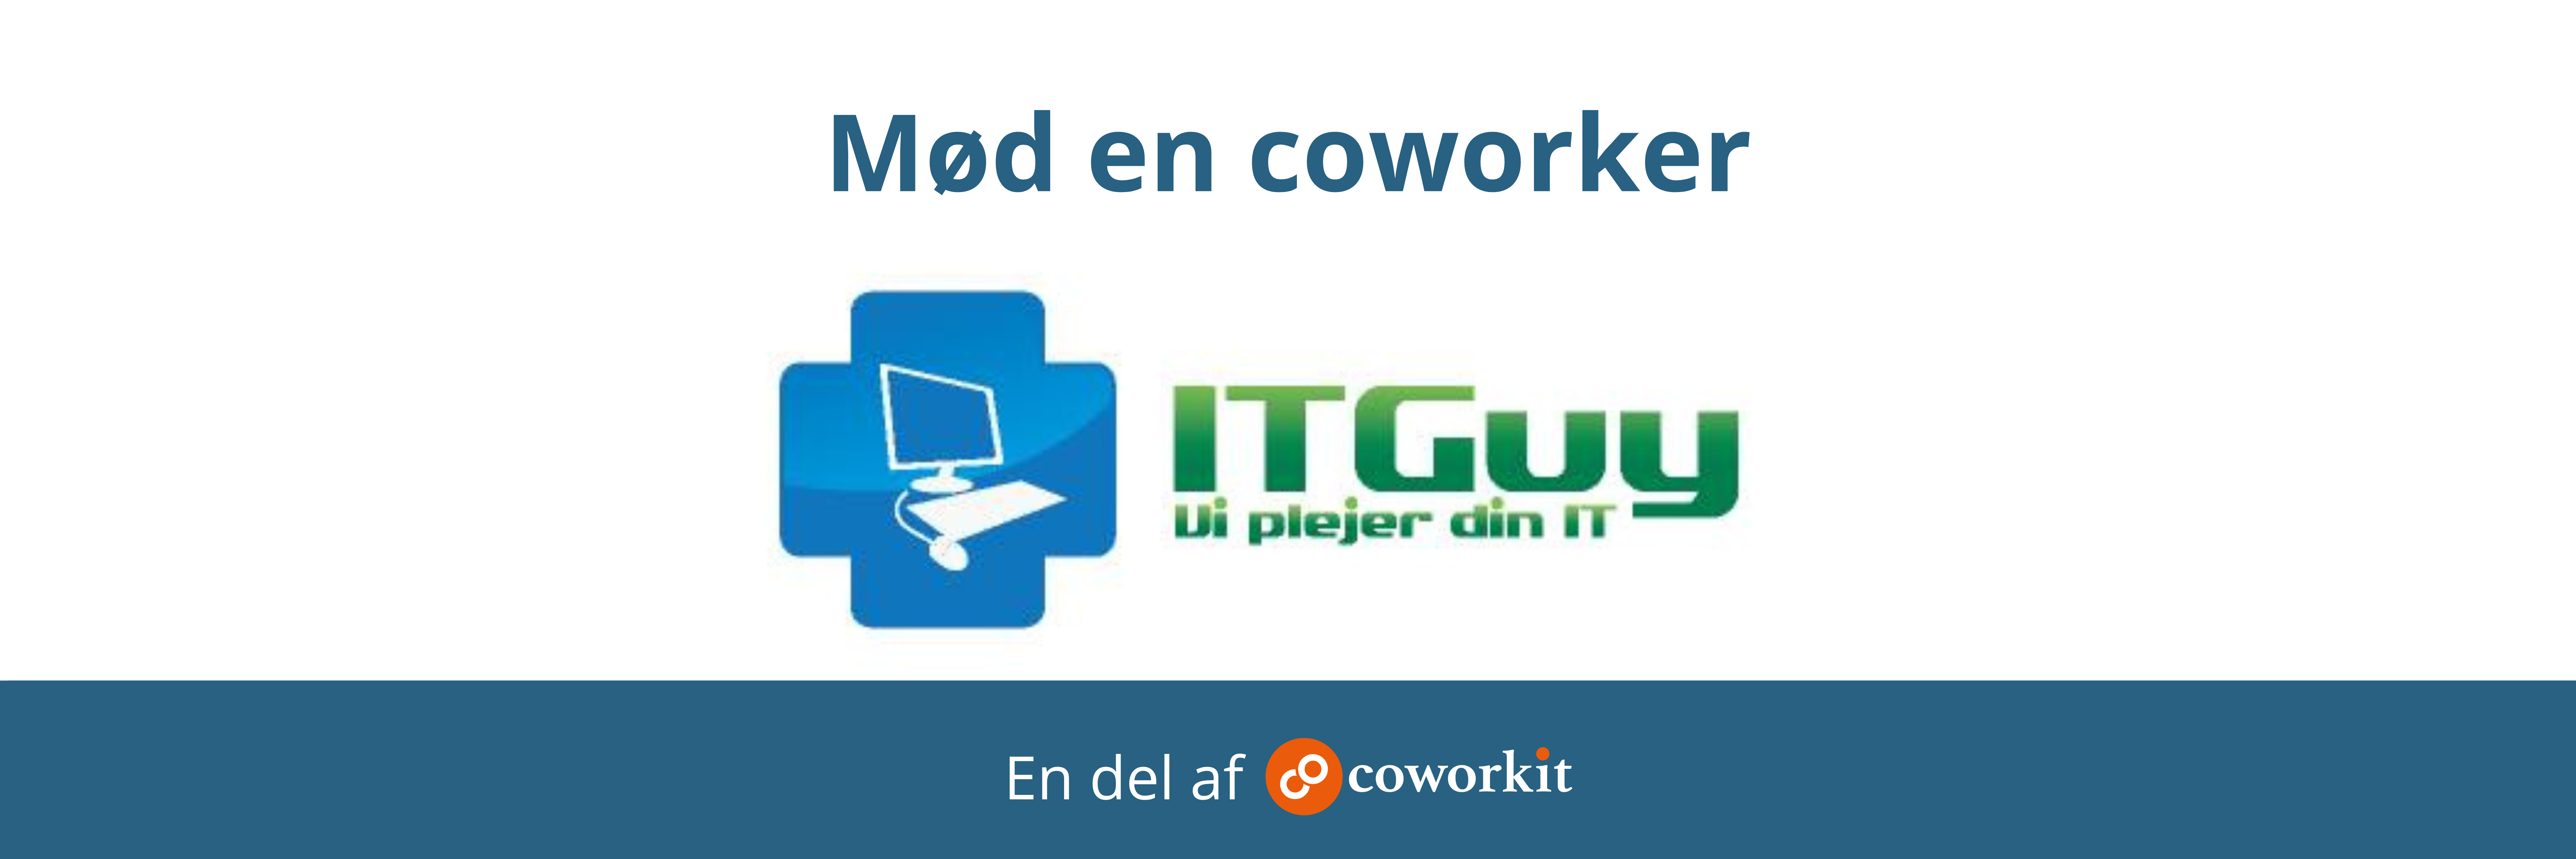 IT-guy-coworkit